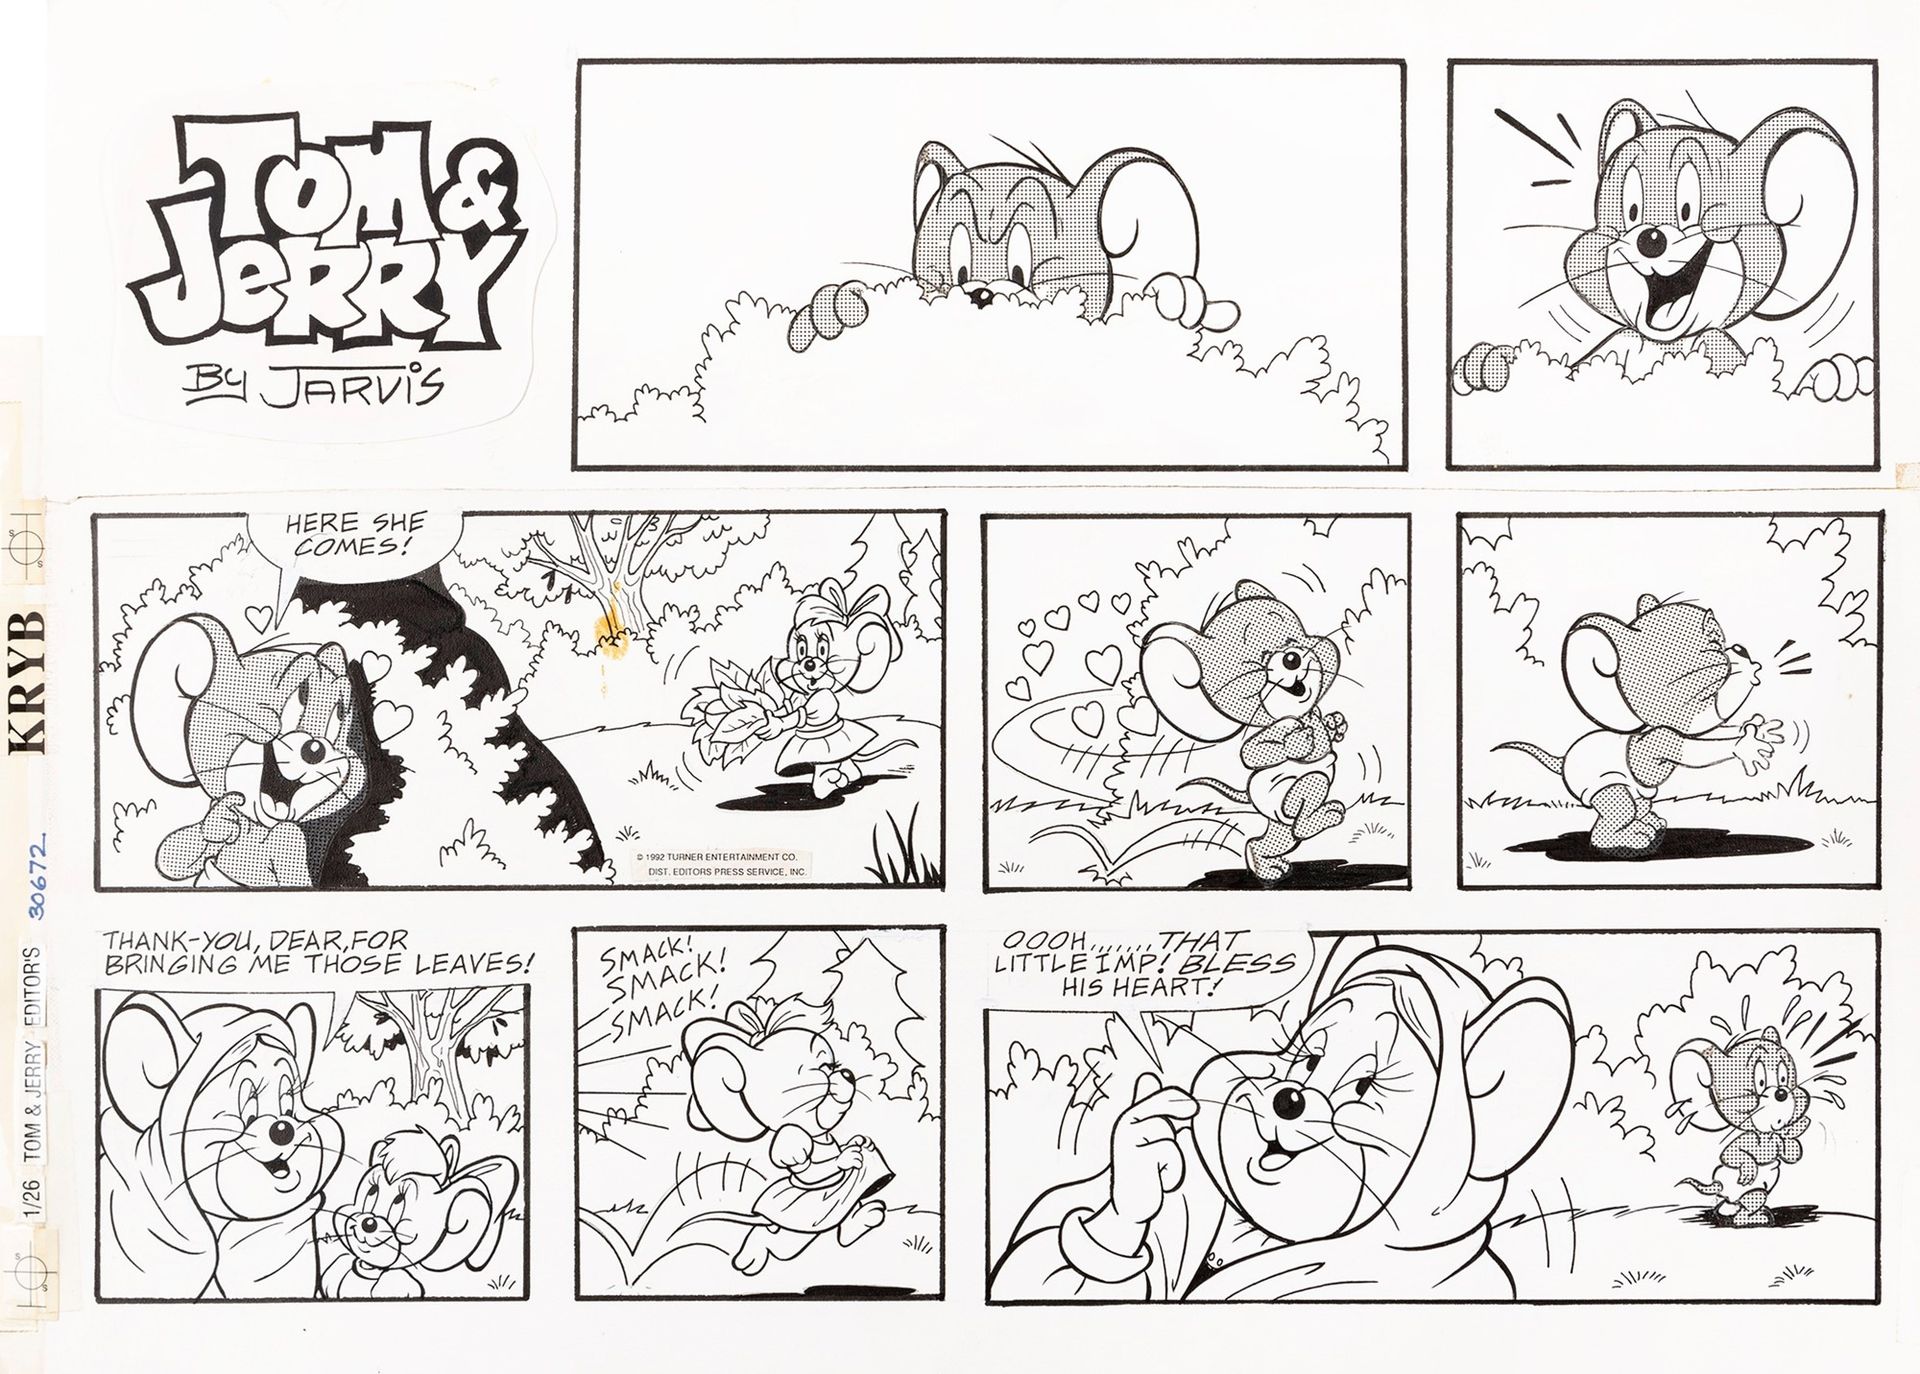 Kelly Jarvis Tom & Jerry, 1992

Bleistift, Tinte und Zipatone auf dünnem Karton
&hellip;